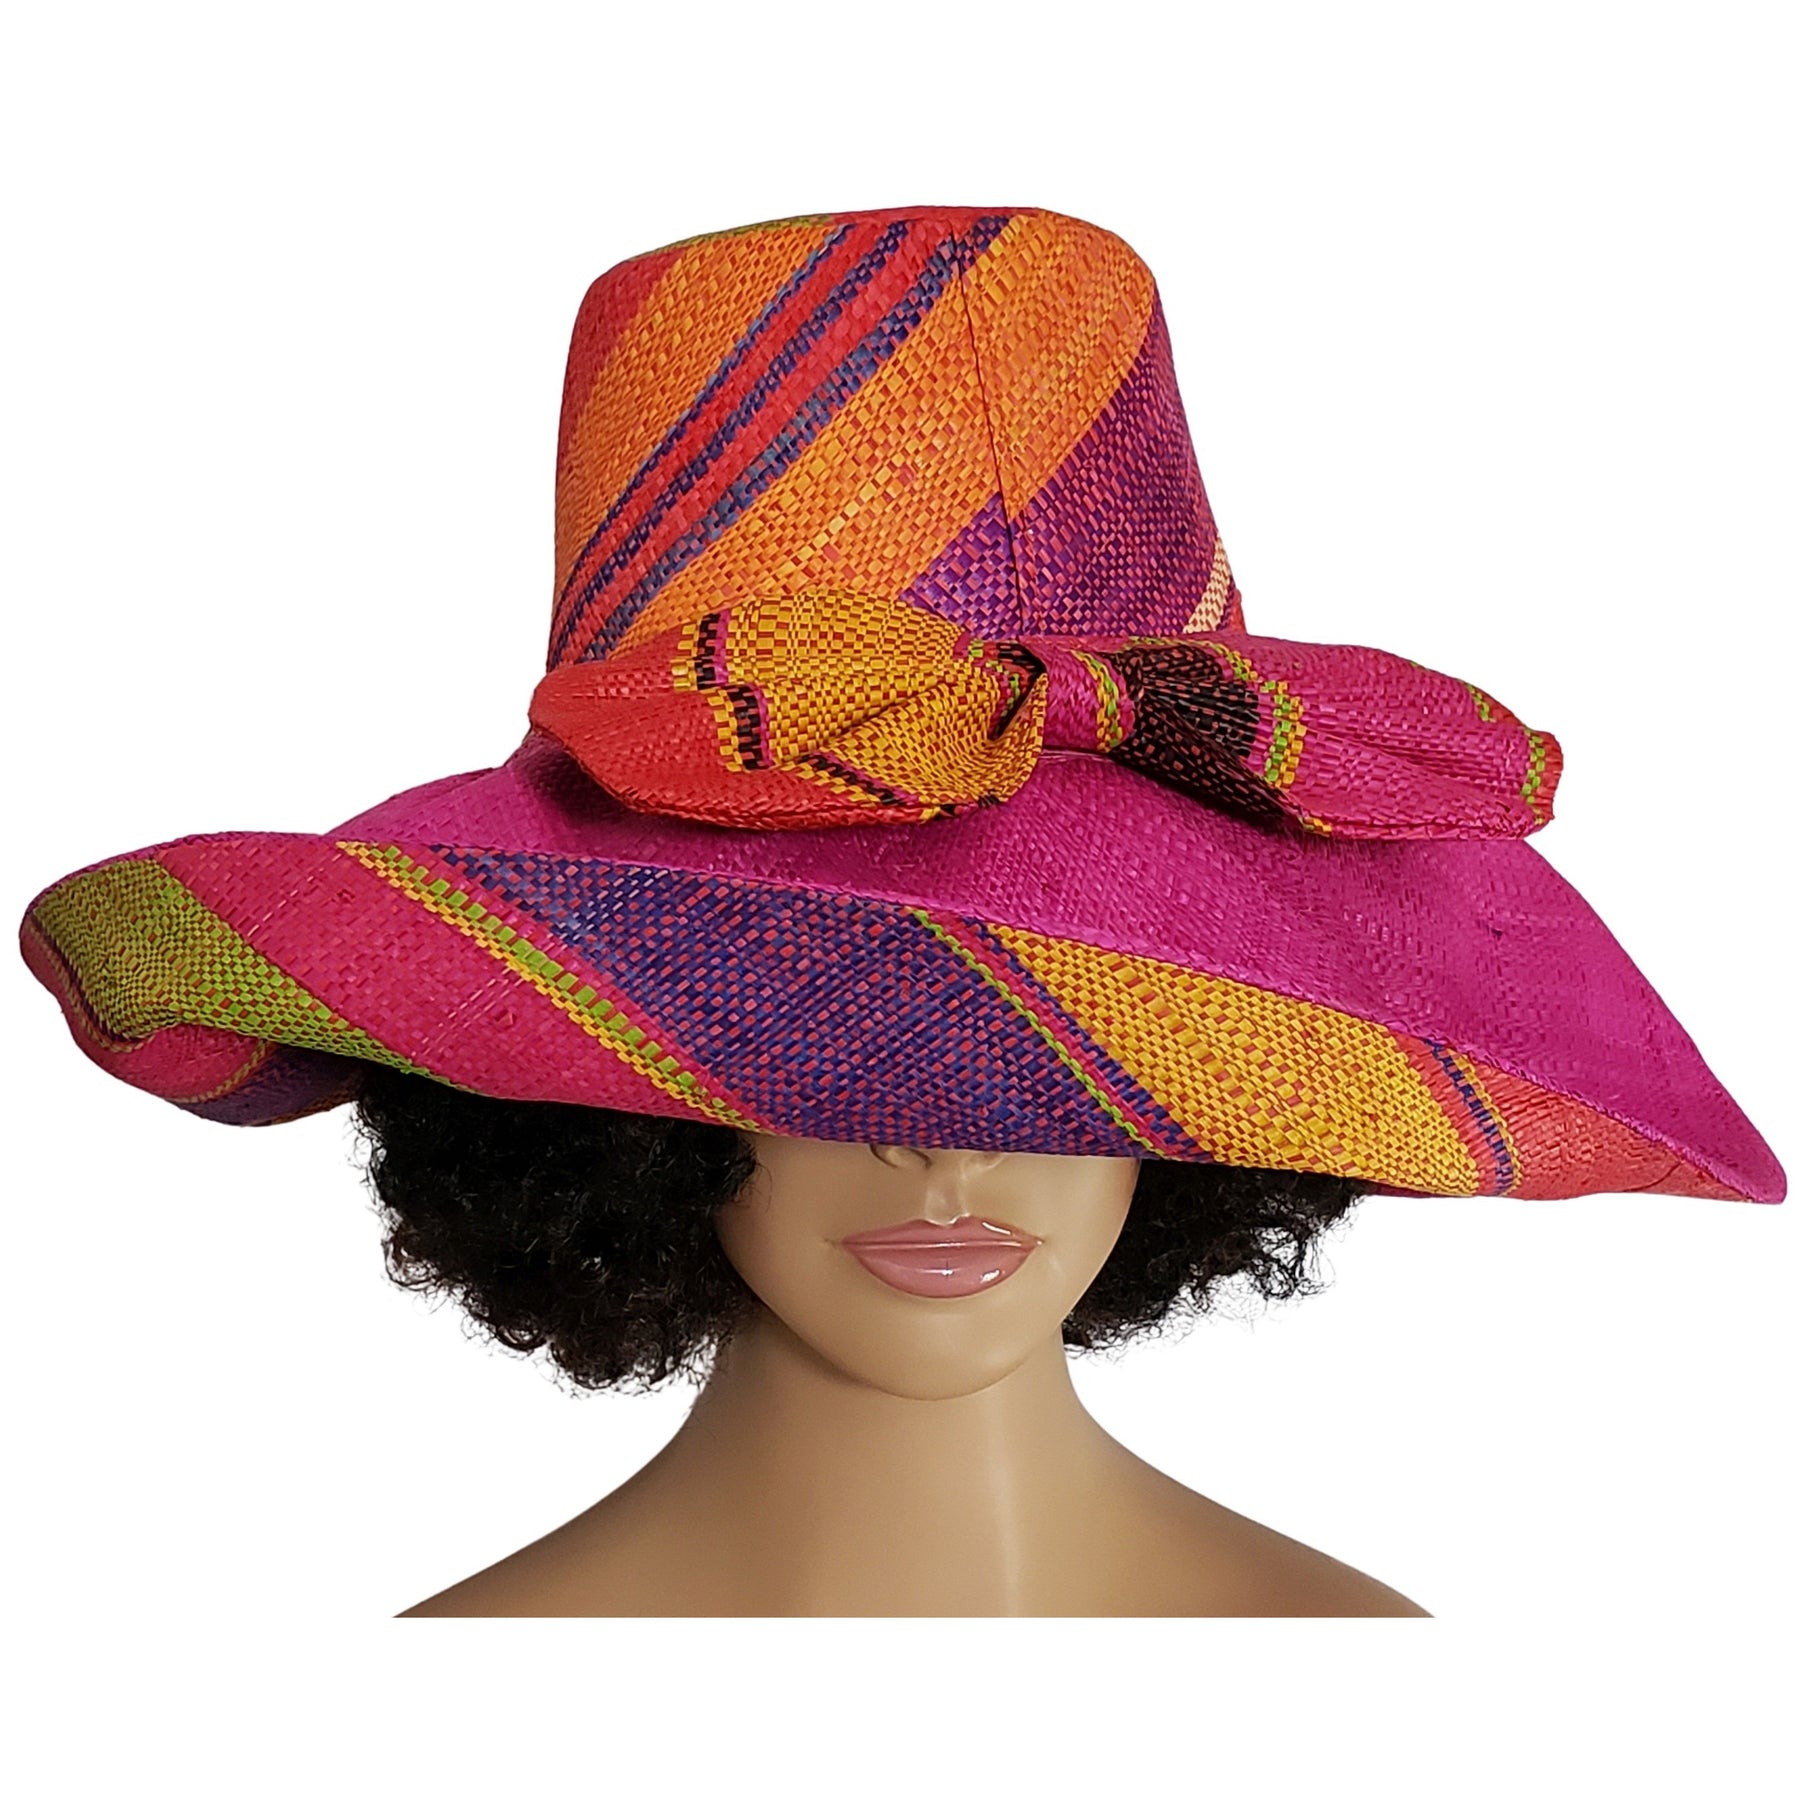 2 of 3: Amma: Authentic Hand Woven Multi-Color Madagascar Big Brim Raffia Sun Hat